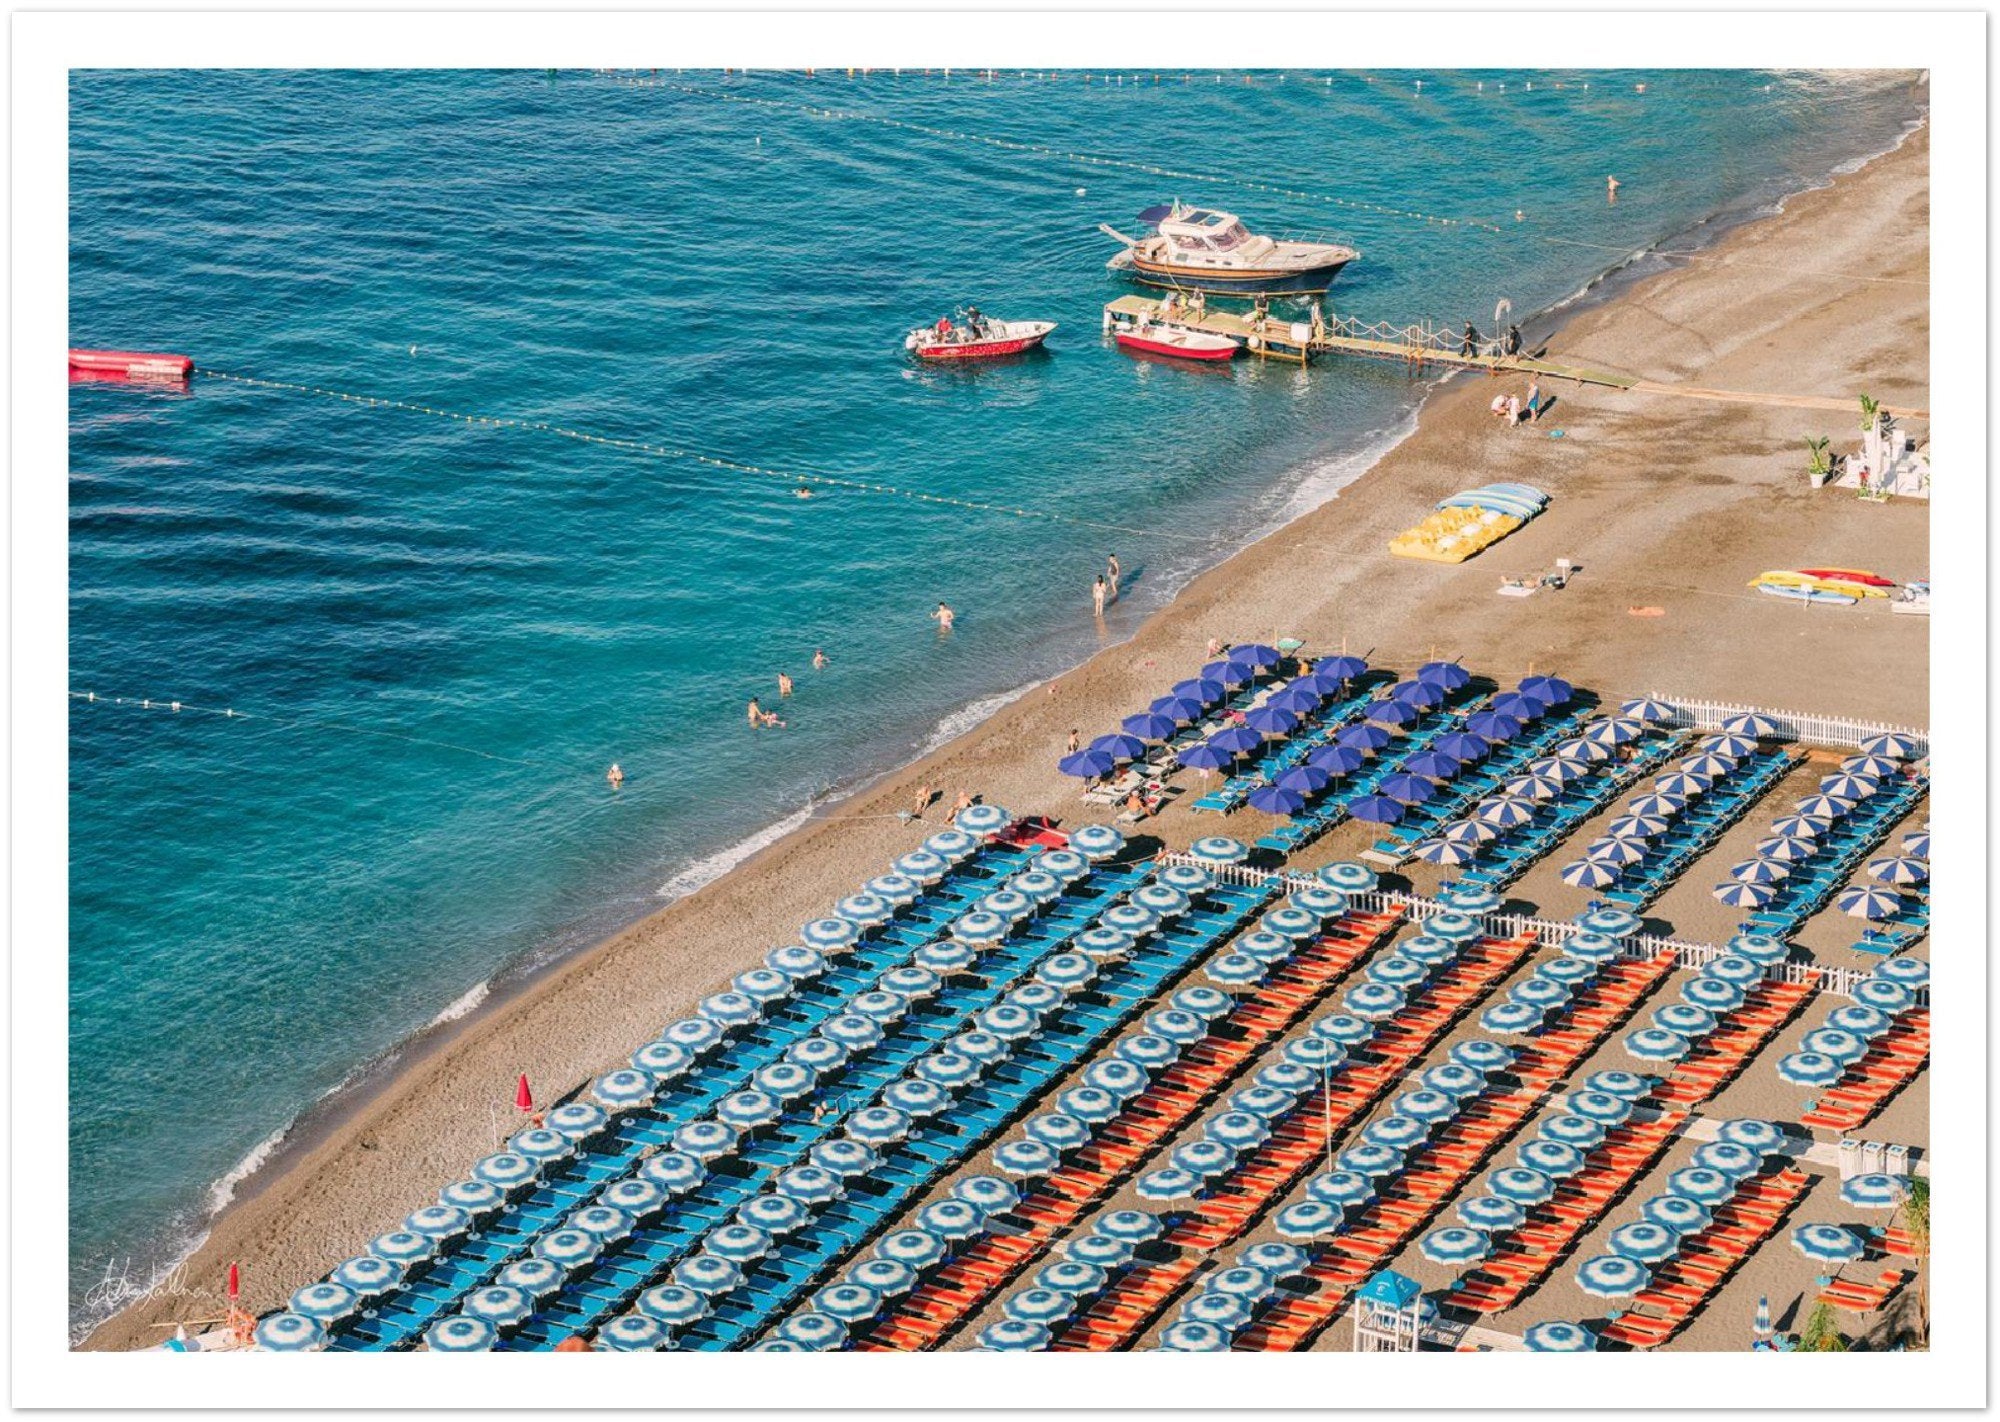 "La Spiaggia Grande" Positano Premium Semi-Glossy Print